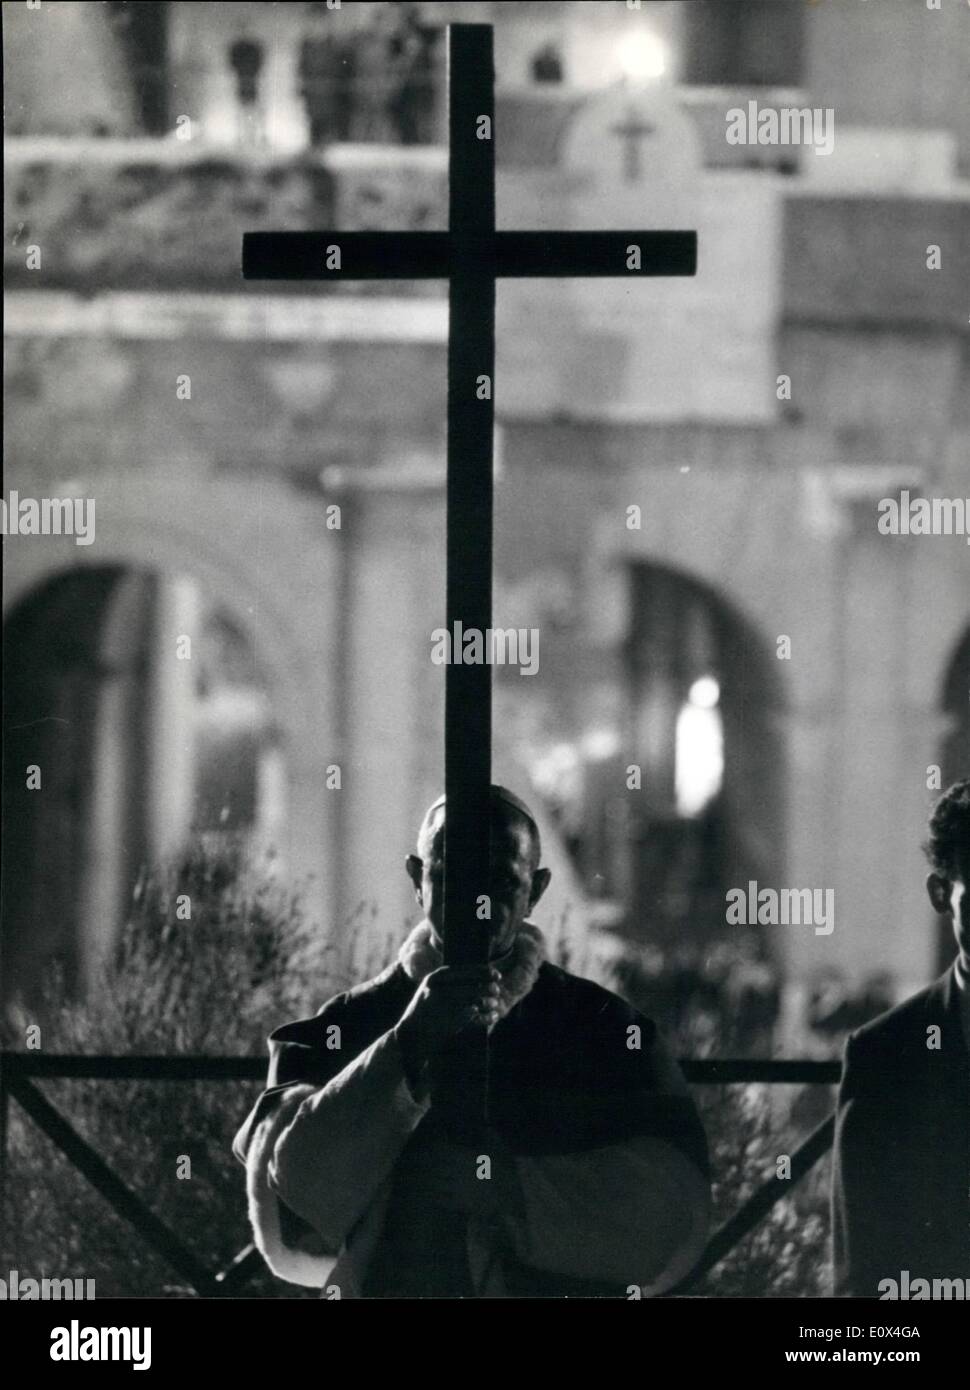 Apr. 04, 1965 - Sua Santità il Papa Paolo VI ha partecipato alla cerimonia della Via Crucis che si ripete ogni anno la strada il nostro Dio Gesù Cristo coperto sul suo cammino la croce. La cerimonia ha avuto luogo all'interno del Colosseo, che era un sacco di gente che ha applaudito il Papa. Foto Stock